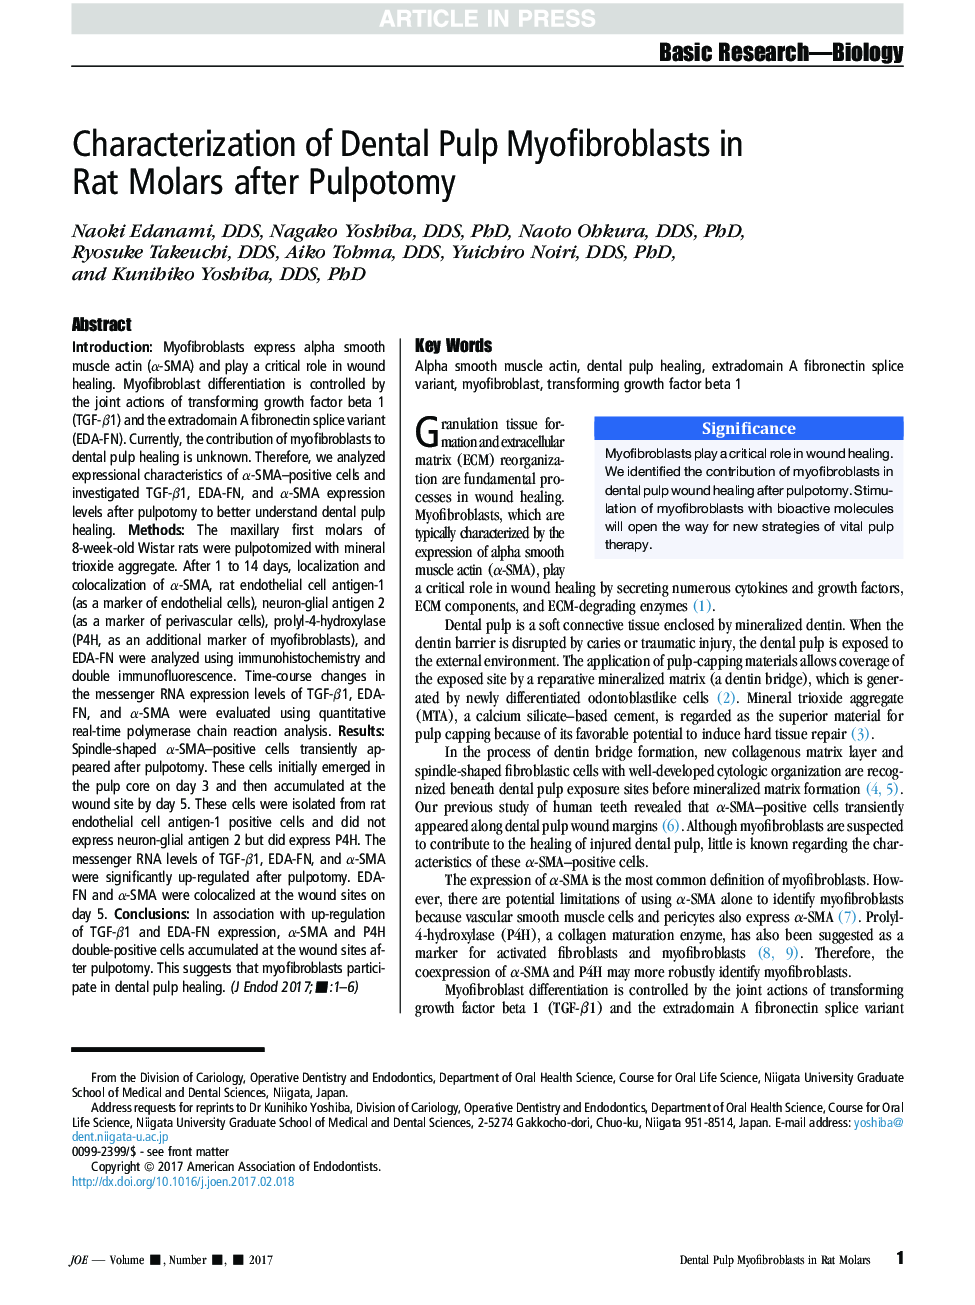 تعیین میوفیبروبلاست های پالپ دندانی در موش صحرایی پس از پالپوتومی 